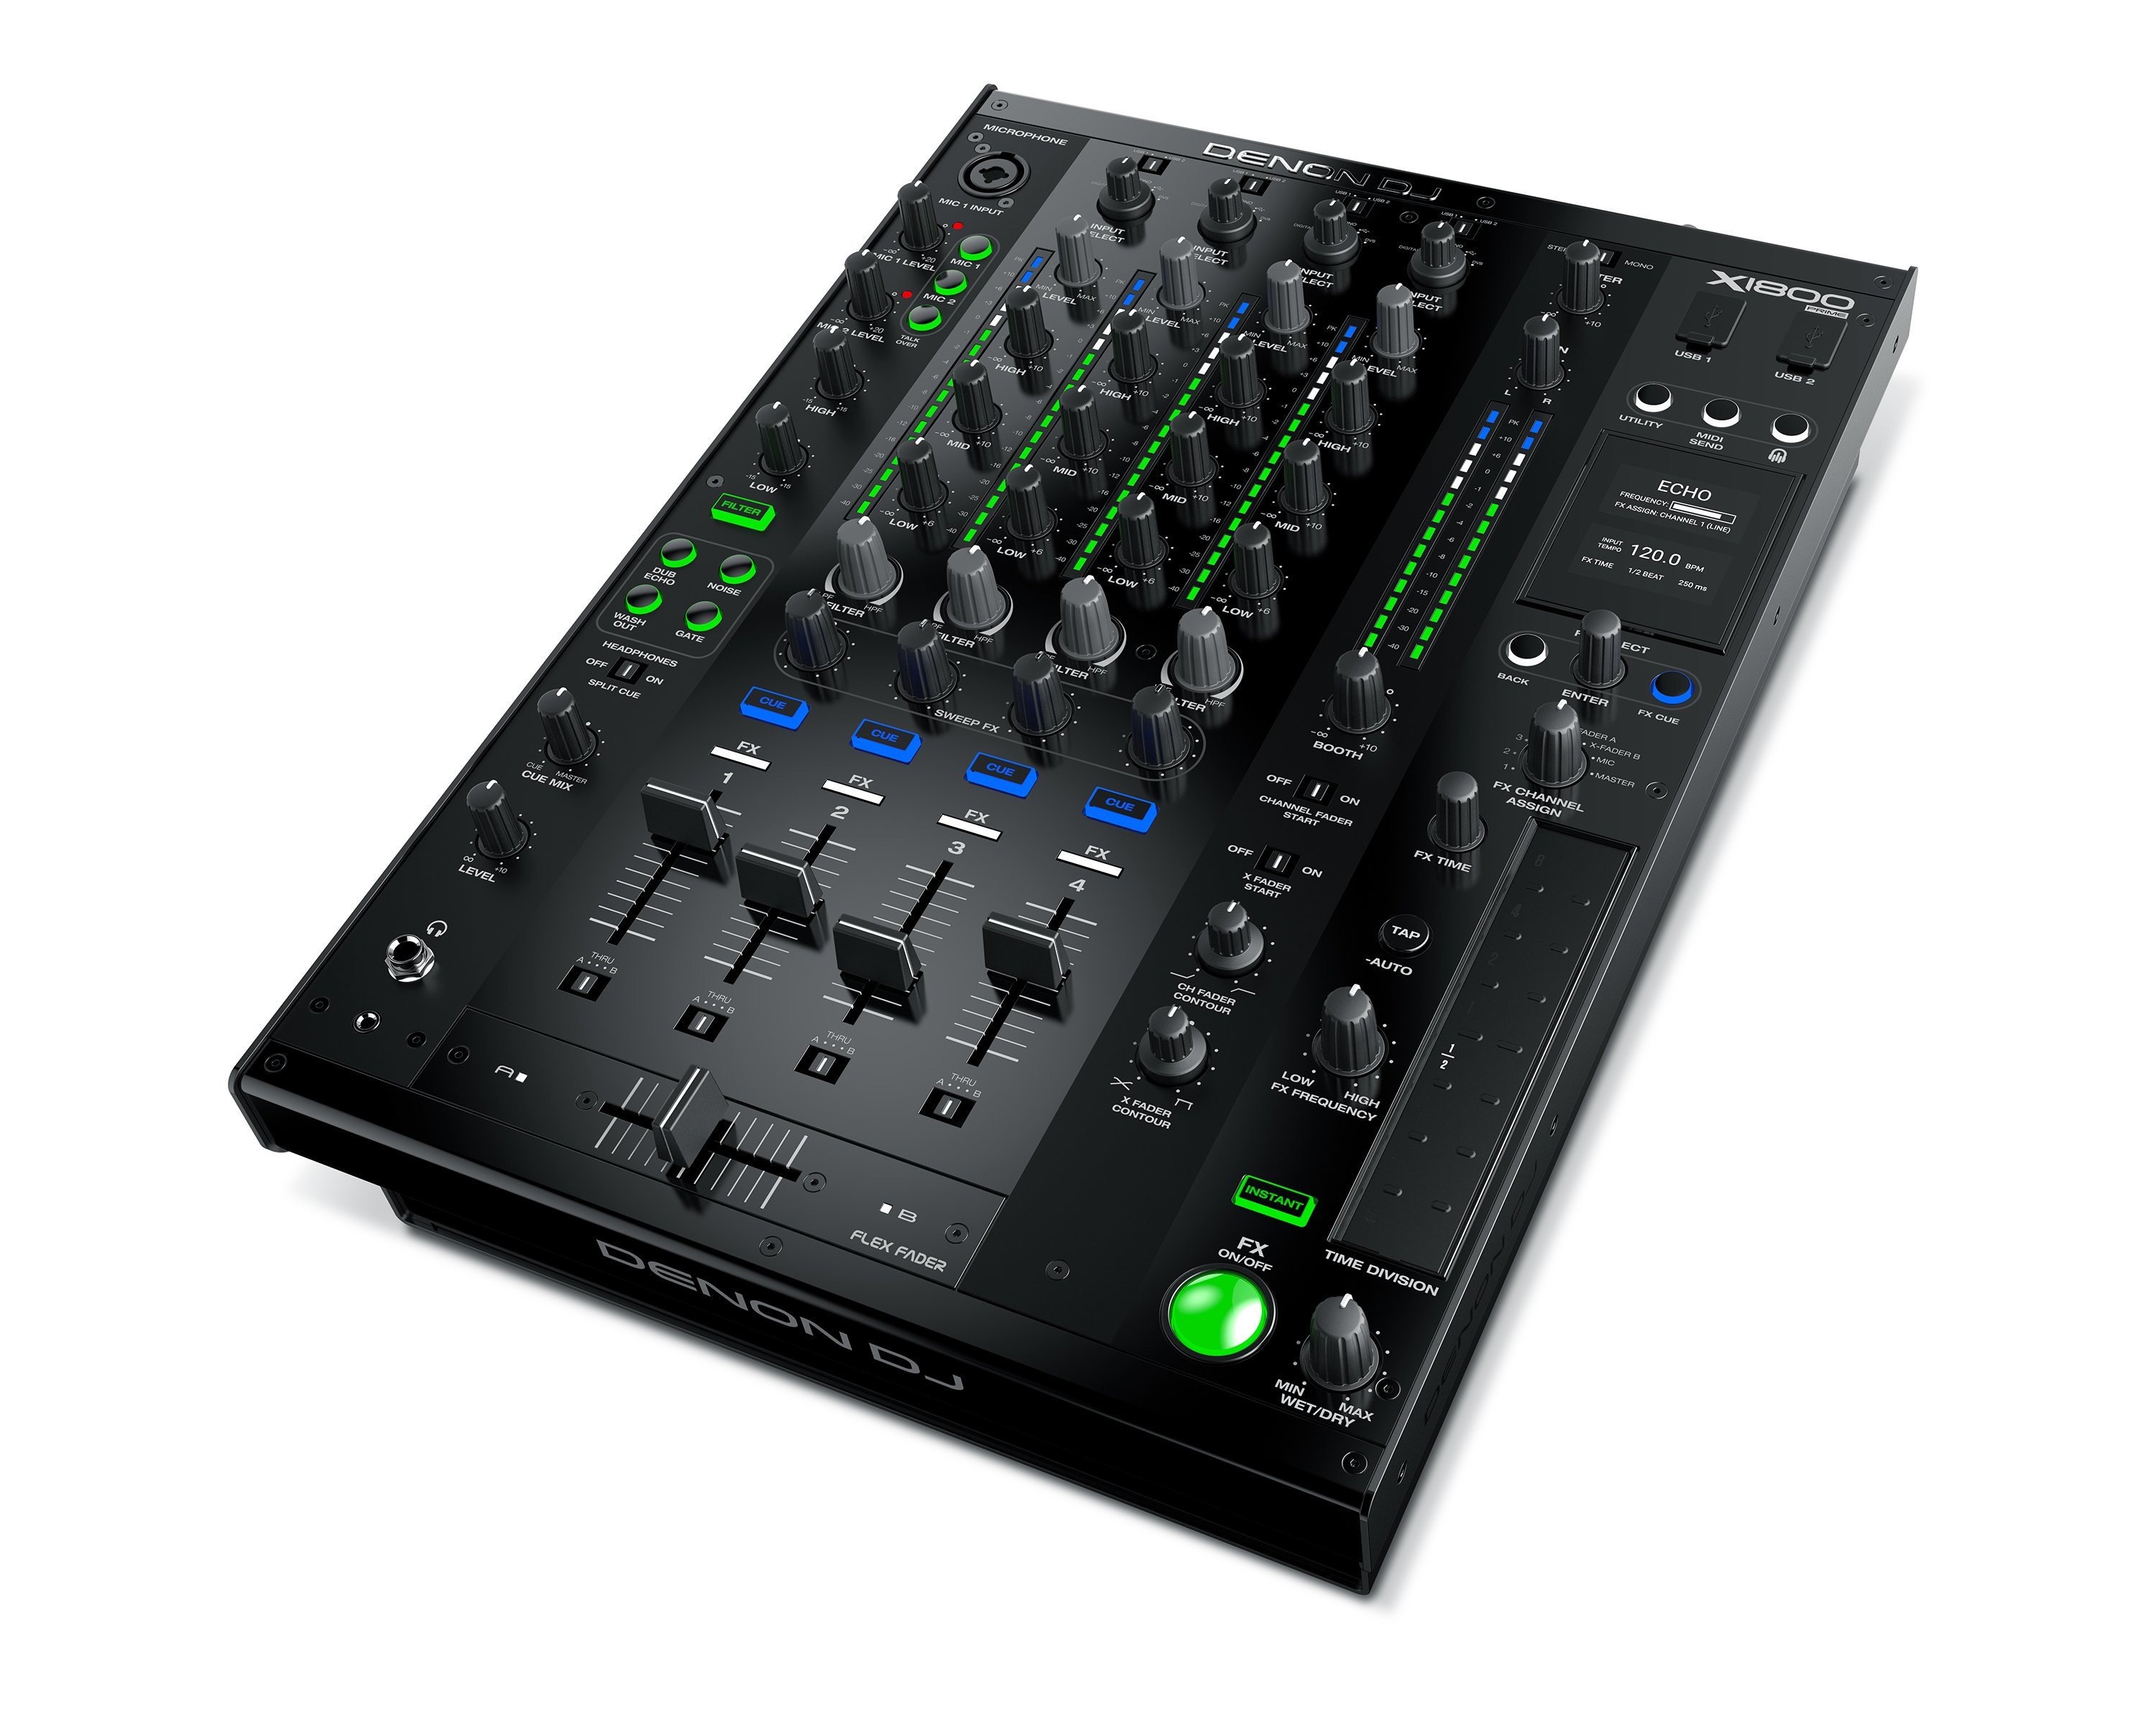 Neu: Denon DJ X1800 Prime - 4-Kanal Clubmixer